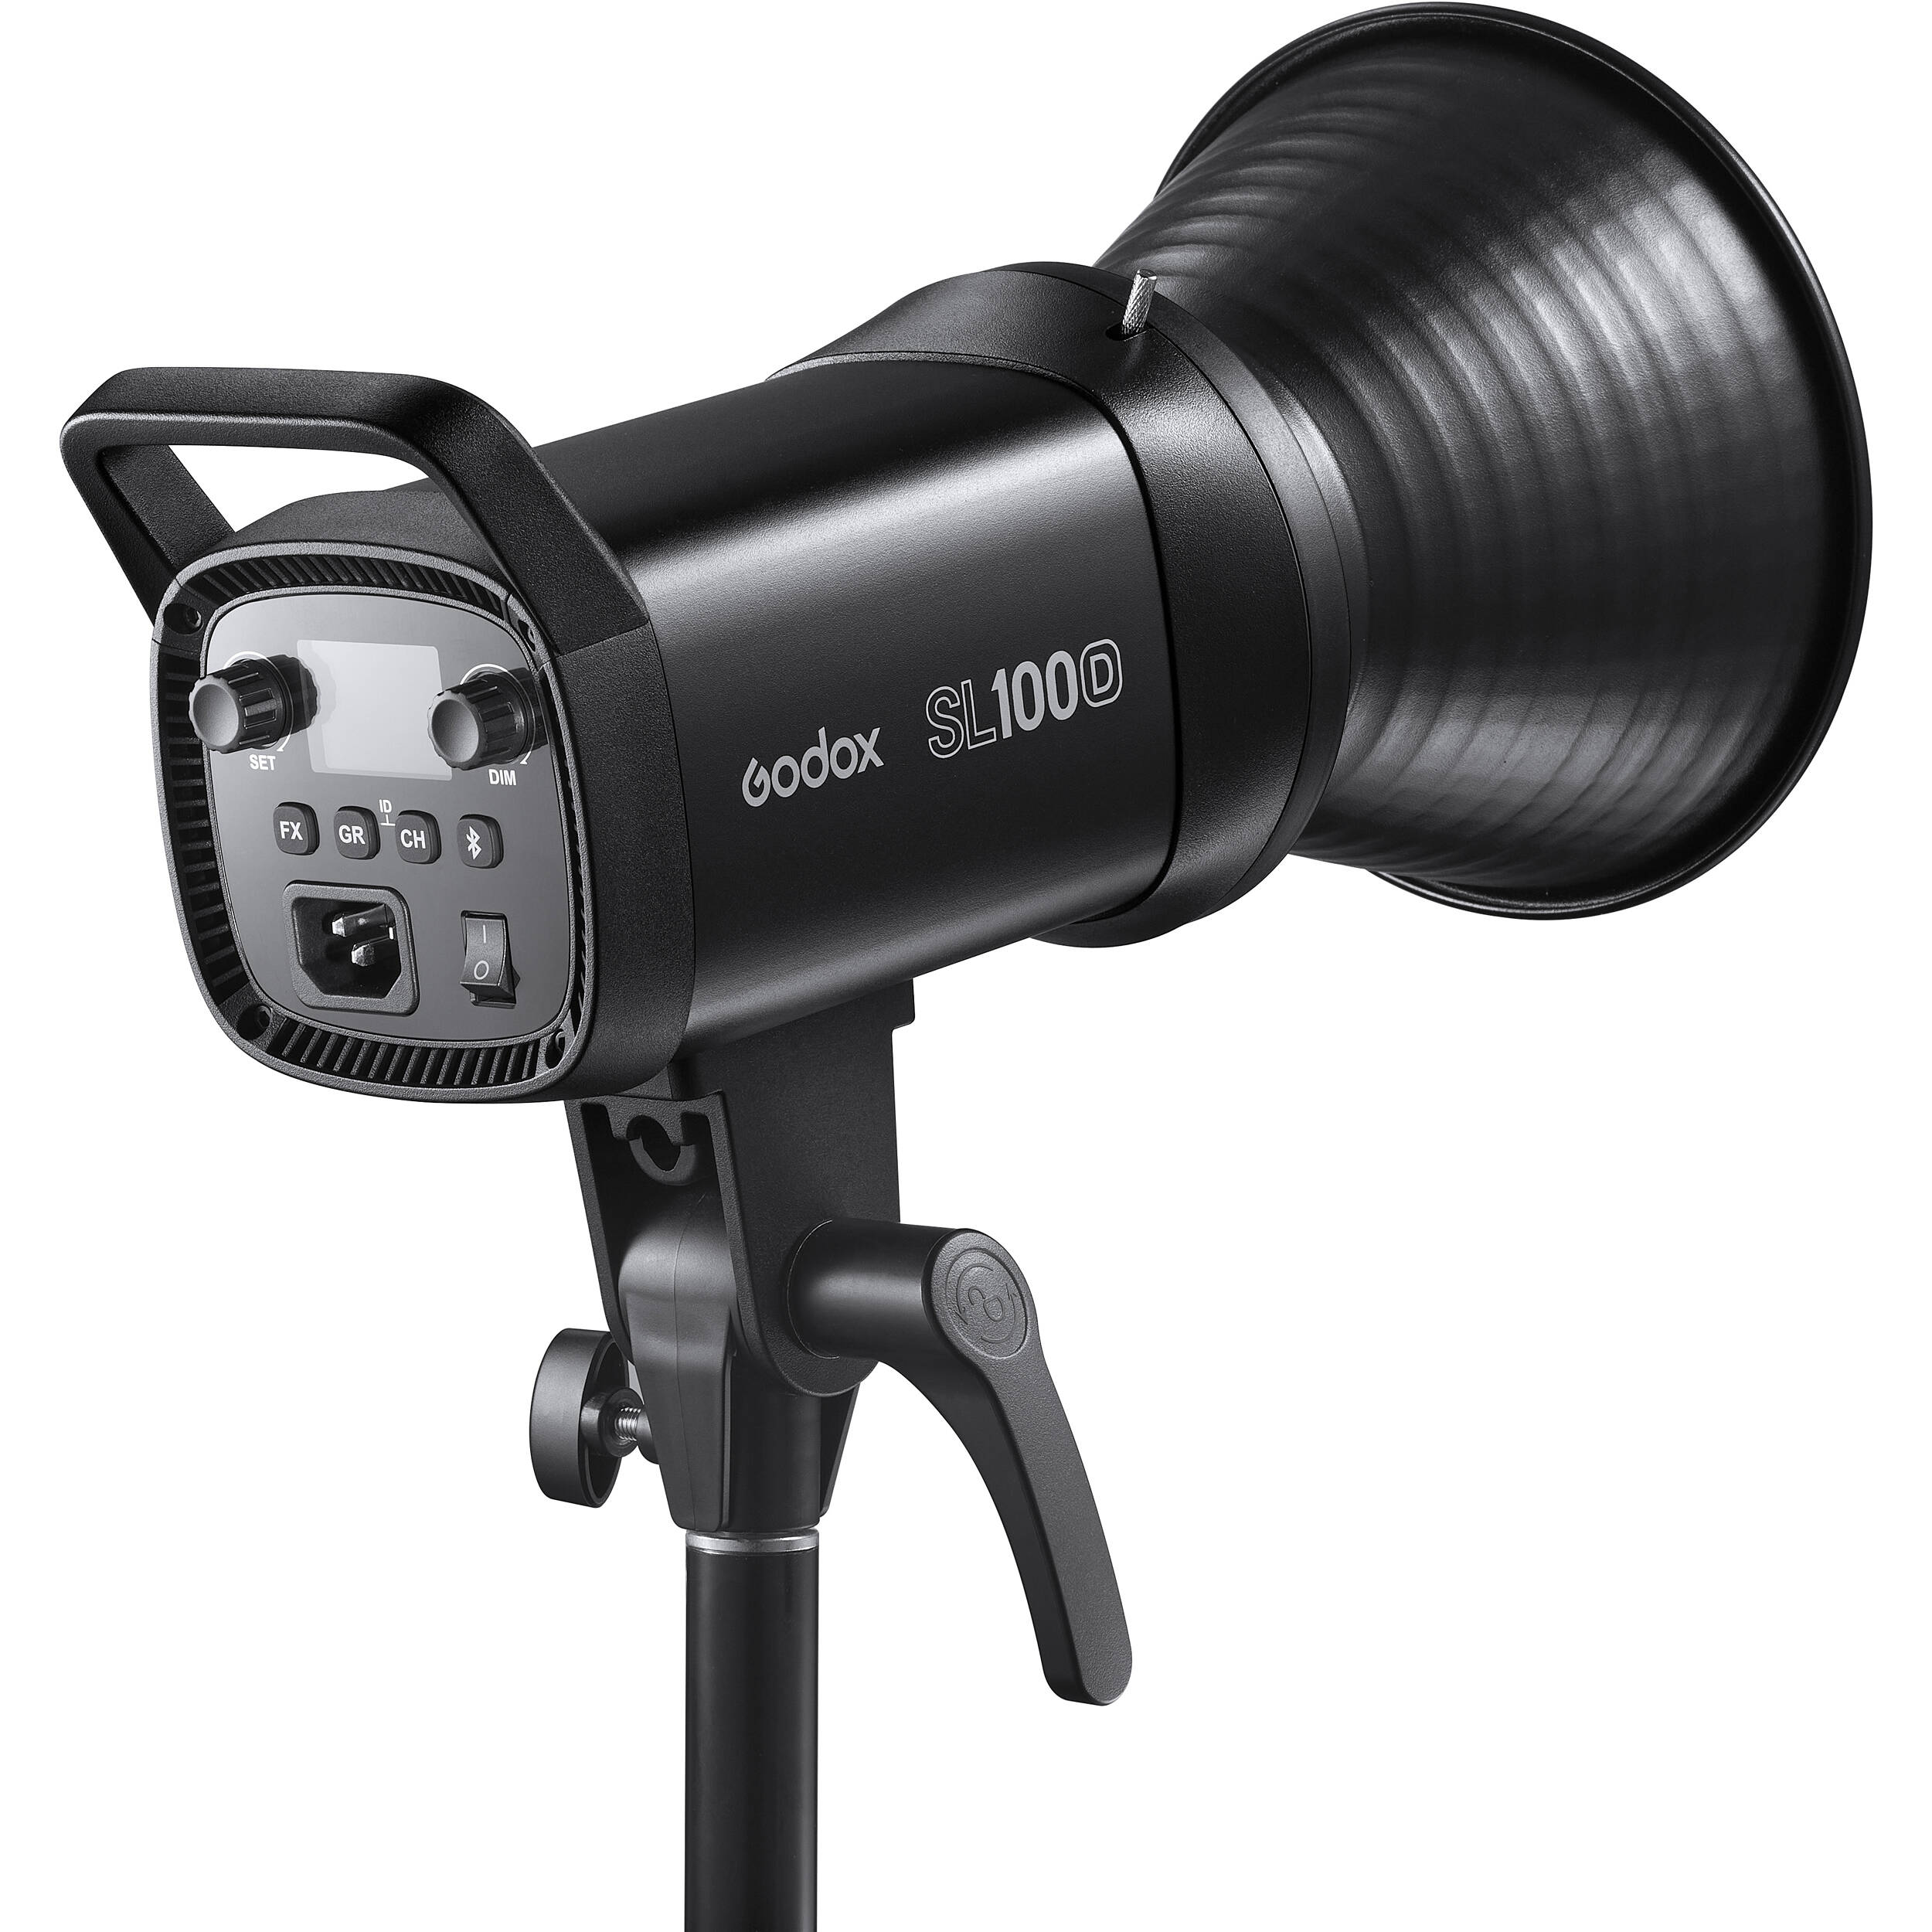    Godox SL100D     Ultra-mart